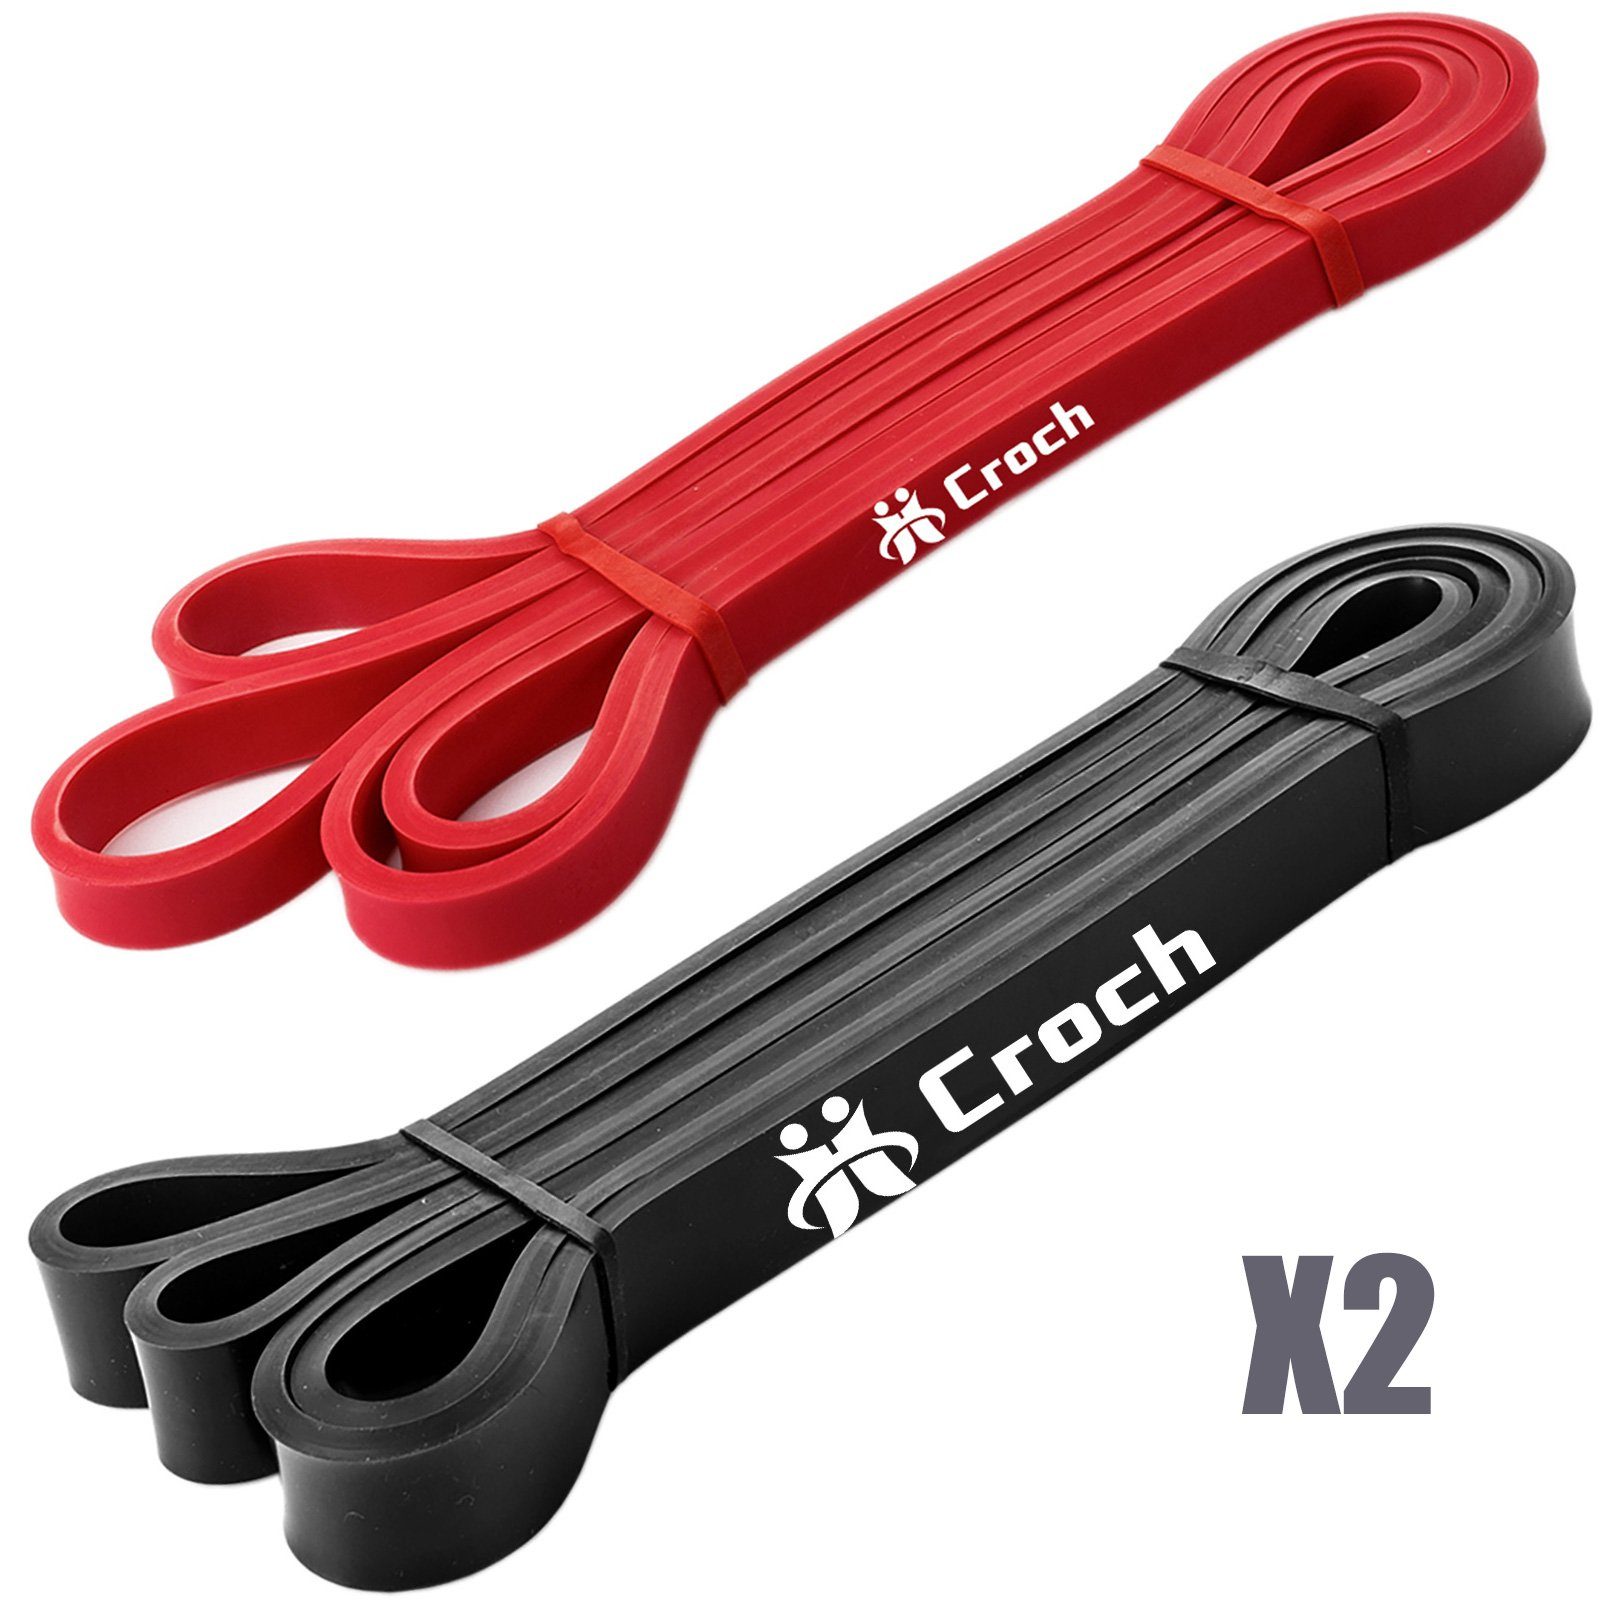 Schwarz 4St.: Naturlatex Rot Widerstand Unterstützung 5-15KGx2 Set, + aus Croch Fitnessband 13-27KGx2 Klimmzughilfe für Trainingsband und